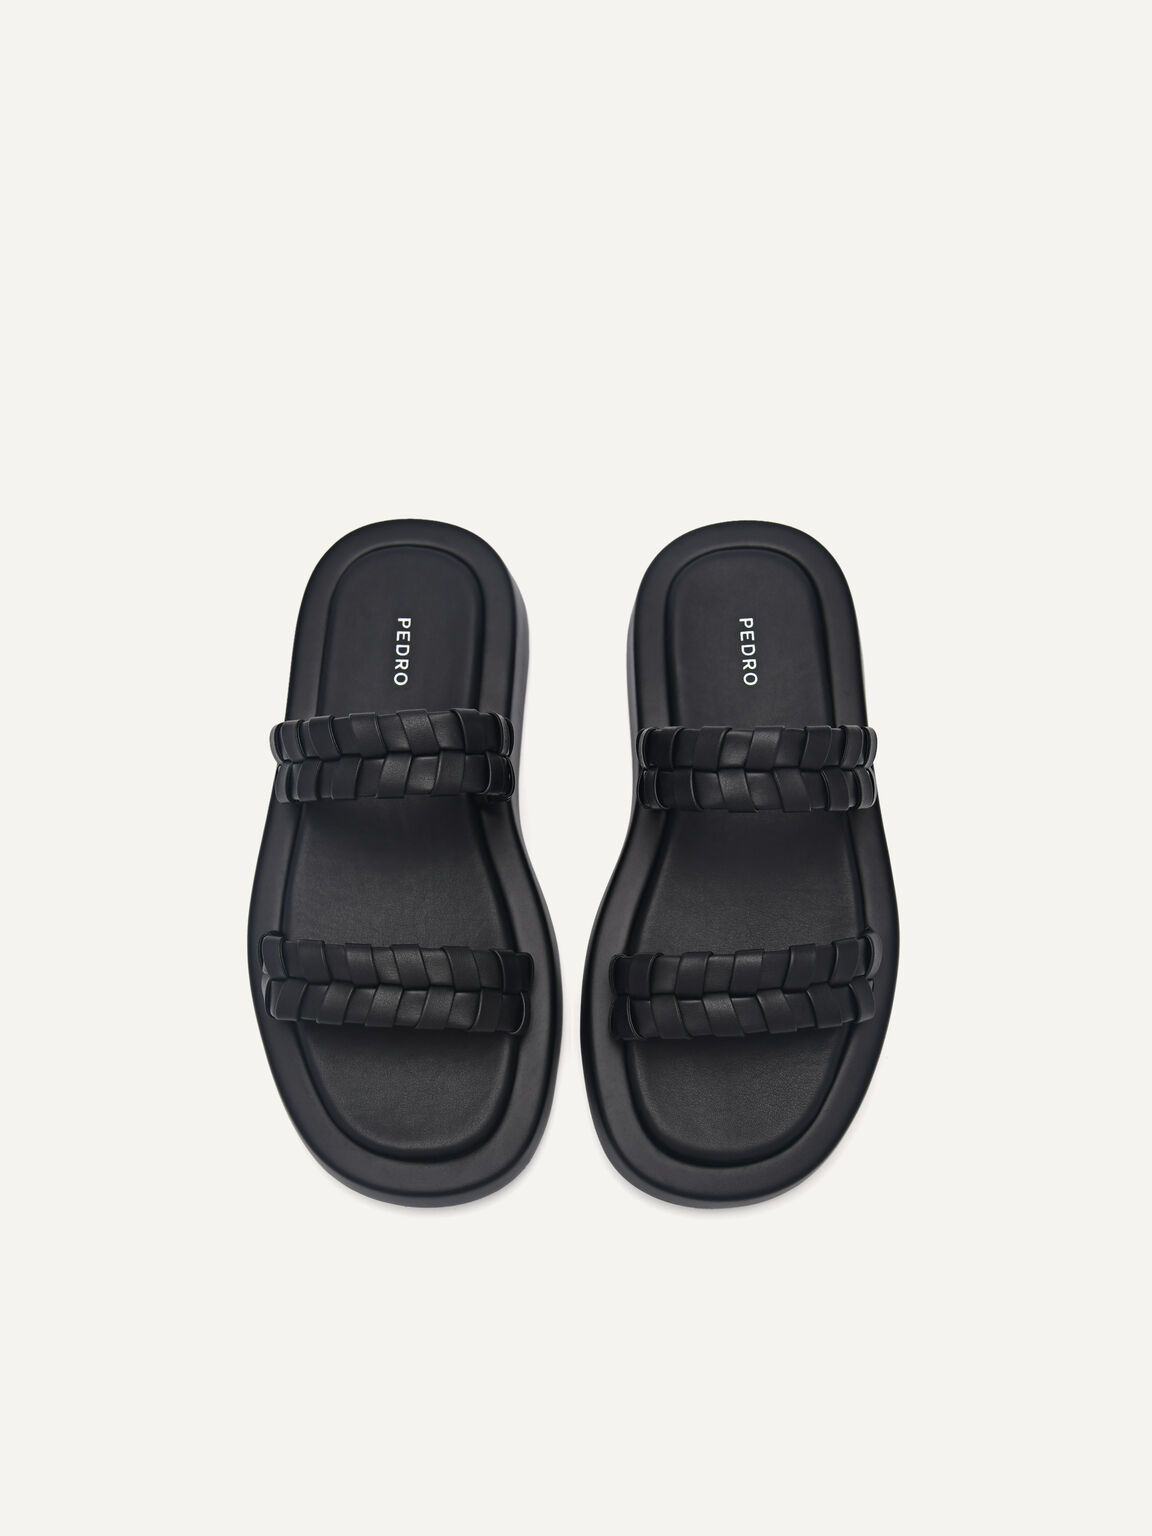 Palma Woven Sandals, Black, hi-res